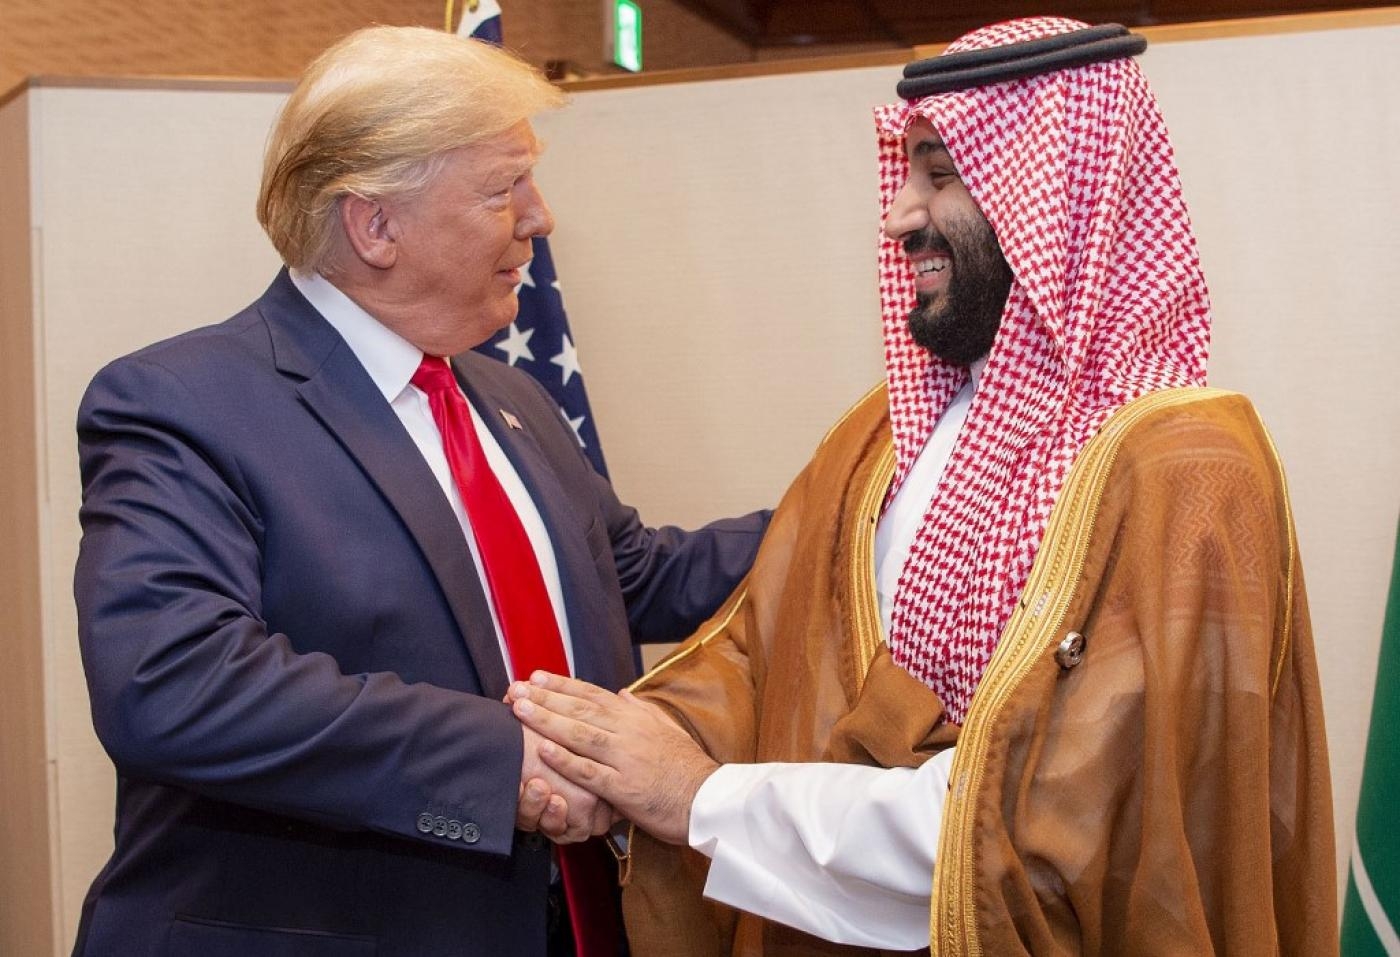 Le président américain Donald Trump serre la main du prince héritier saoudien Mohammed ben Salmane à l’occasion du sommet du G20 2019 à Osaka, au Japon (palais royal saoudien/Bandar al-Jaloud/AFP)